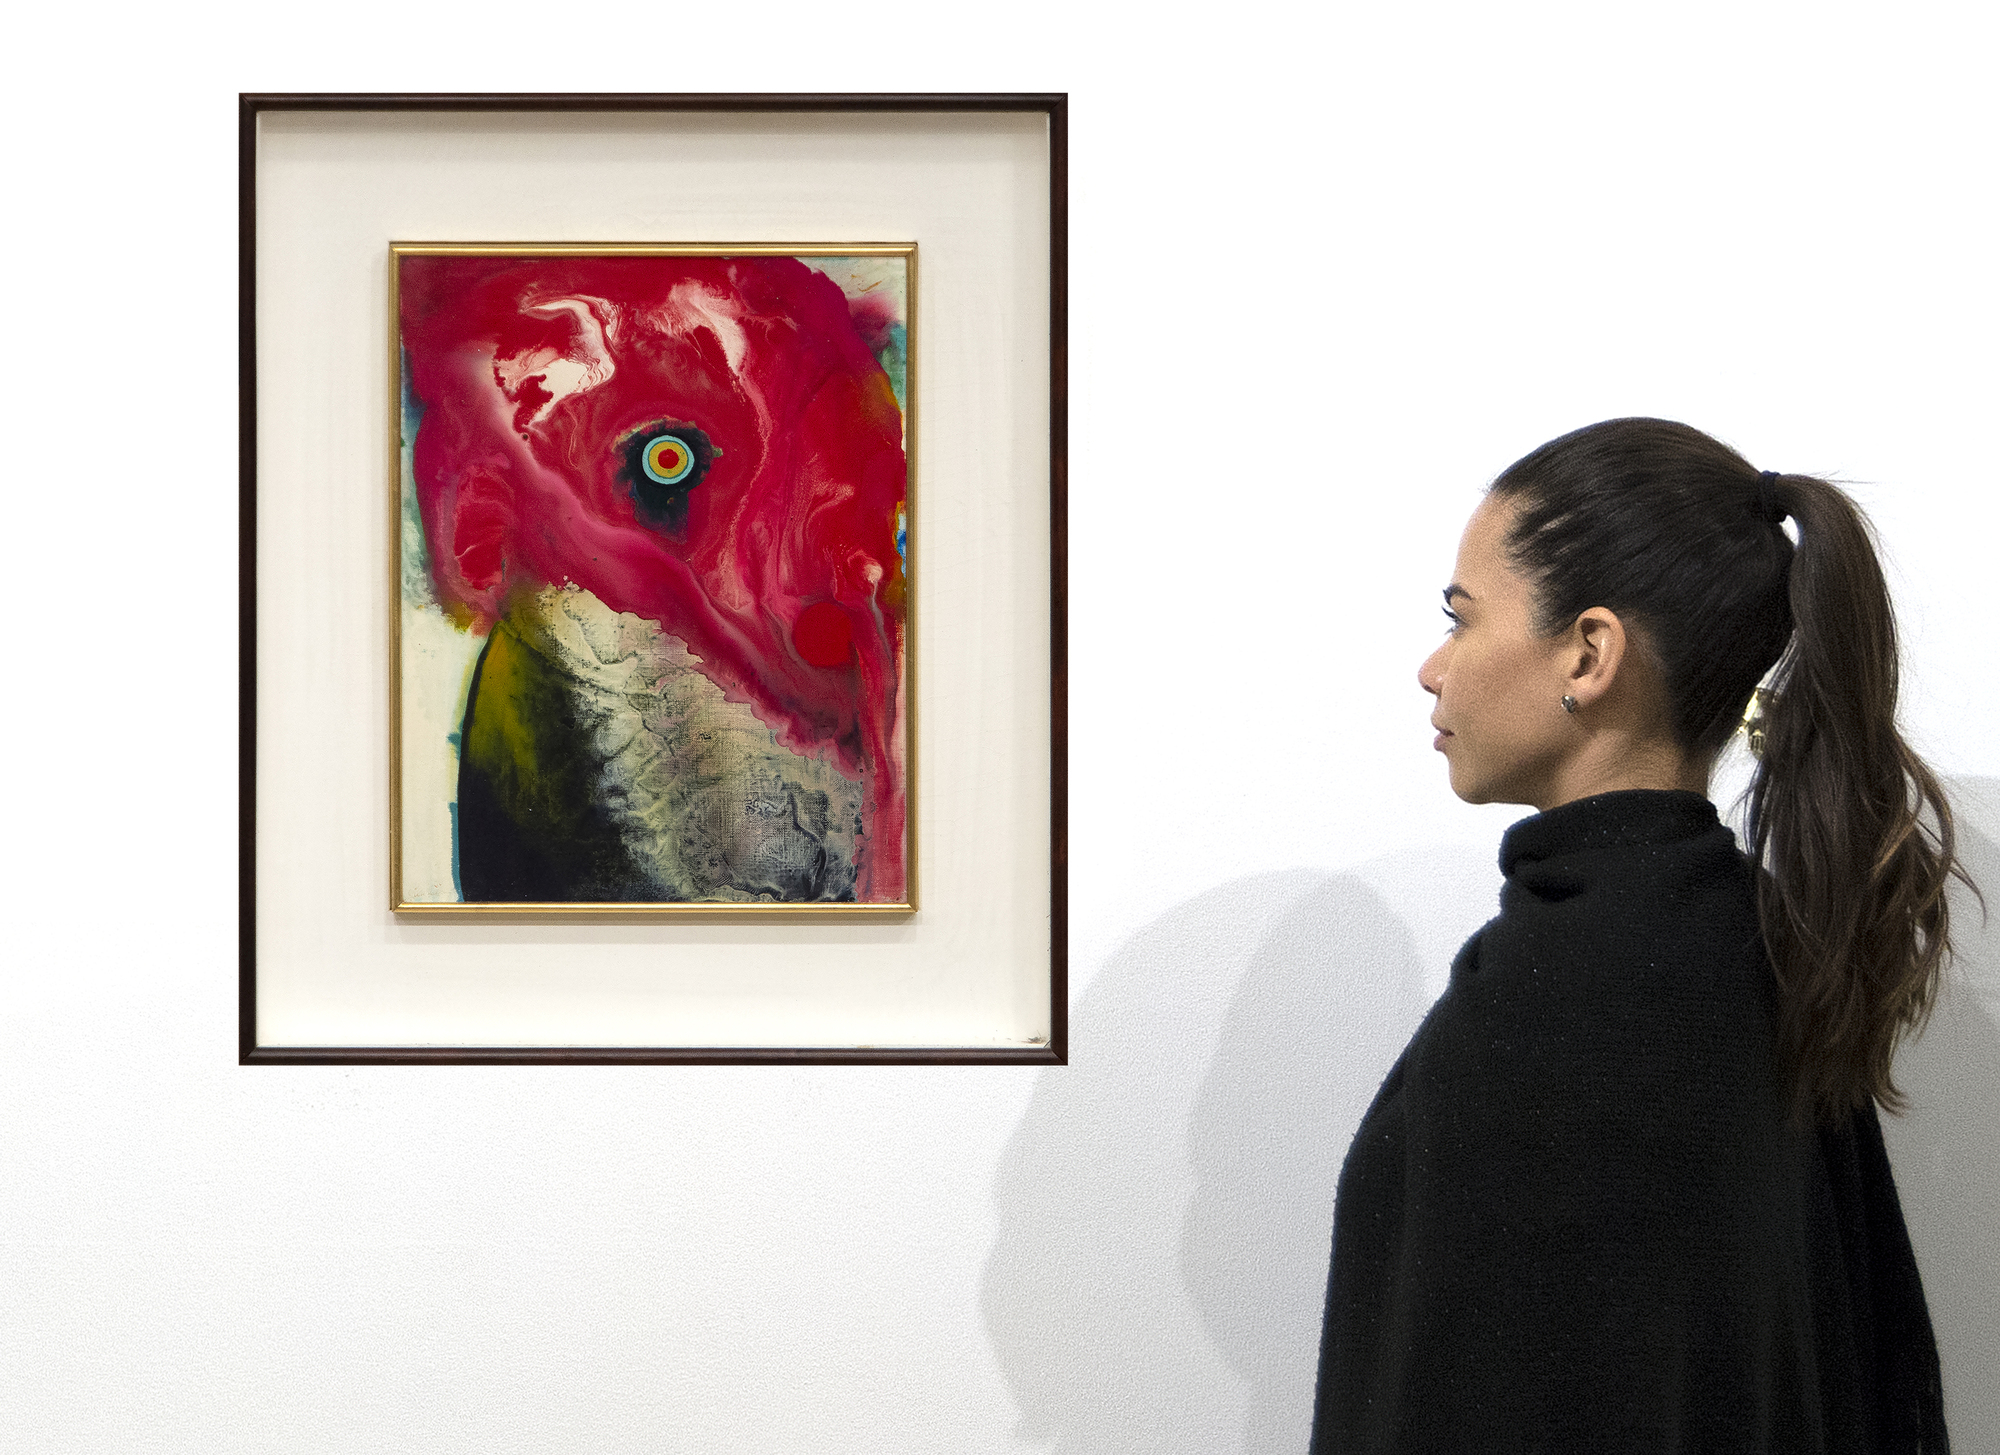 כחברה באגודת האמנות האגדית של גוטאי ששגשגה בין 1954 ל-1972, הופיעה סדאמסה מוטונגה כאשר האקזיסטנציאליזם הסוריאליסטי הפוסט-אטומי היה בחוד החנית של ההתפתחות האמנותית ביפן. עם זאת, הוא בחר בדרך אחרת. הוא הפנה את גבו להרס שחוללה המלחמה ויצר עבודה רעננה, שמחה ומשביעת. "ללא כותרת" מ-1966 הוא בסגנון הקלאסי שלו, שהתפתח במקביל לציוריו של מוריס לואיס, מה שמכונה "רעלה". זה עשוי להציע את המסרק המואר, העין והנוצות המנומרות של ציפור גלינאקית, אבל כל אסוציאציות כאלה הן כנראה שרירותיות ולא מכוונות. במקום זאת, זוהי תצוגה מוצלחת להפליא של האוונגרד של מוטונגה לקחת על Tarashikomi יפני מסורתי — הטכניקה הכוללת הטיית הבד בזוויות שונות כדי לאפשר תערובות של שרף ואמייל לזרום אחד על השני לפני הצבע יבש לחלוטין.